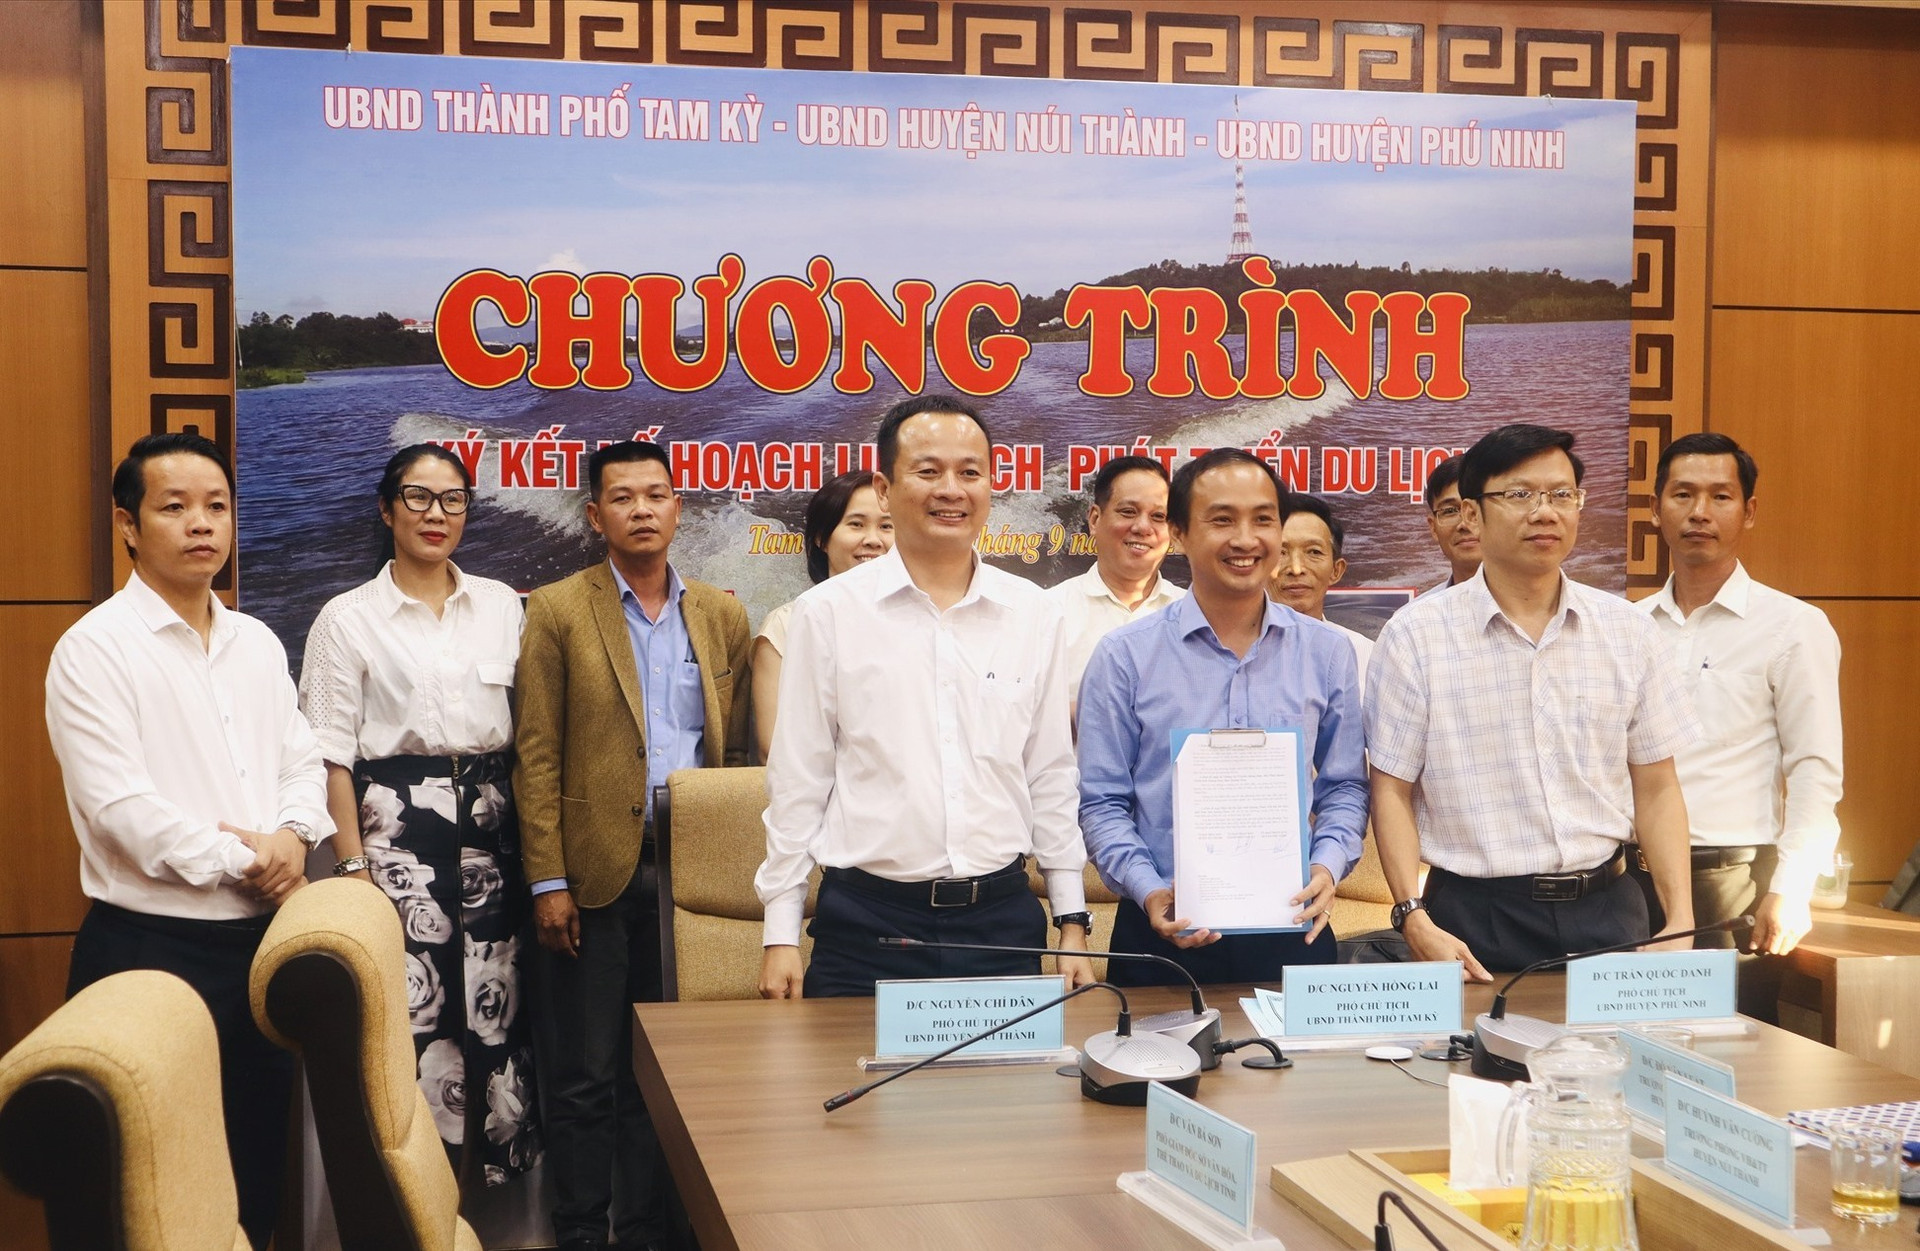 Lãnh đạo 3 địa phương Tam Kỳ - Núi Thành - Phú Ninh ký kết hợp tác phát triển du lịch. Ảnh: Q.T